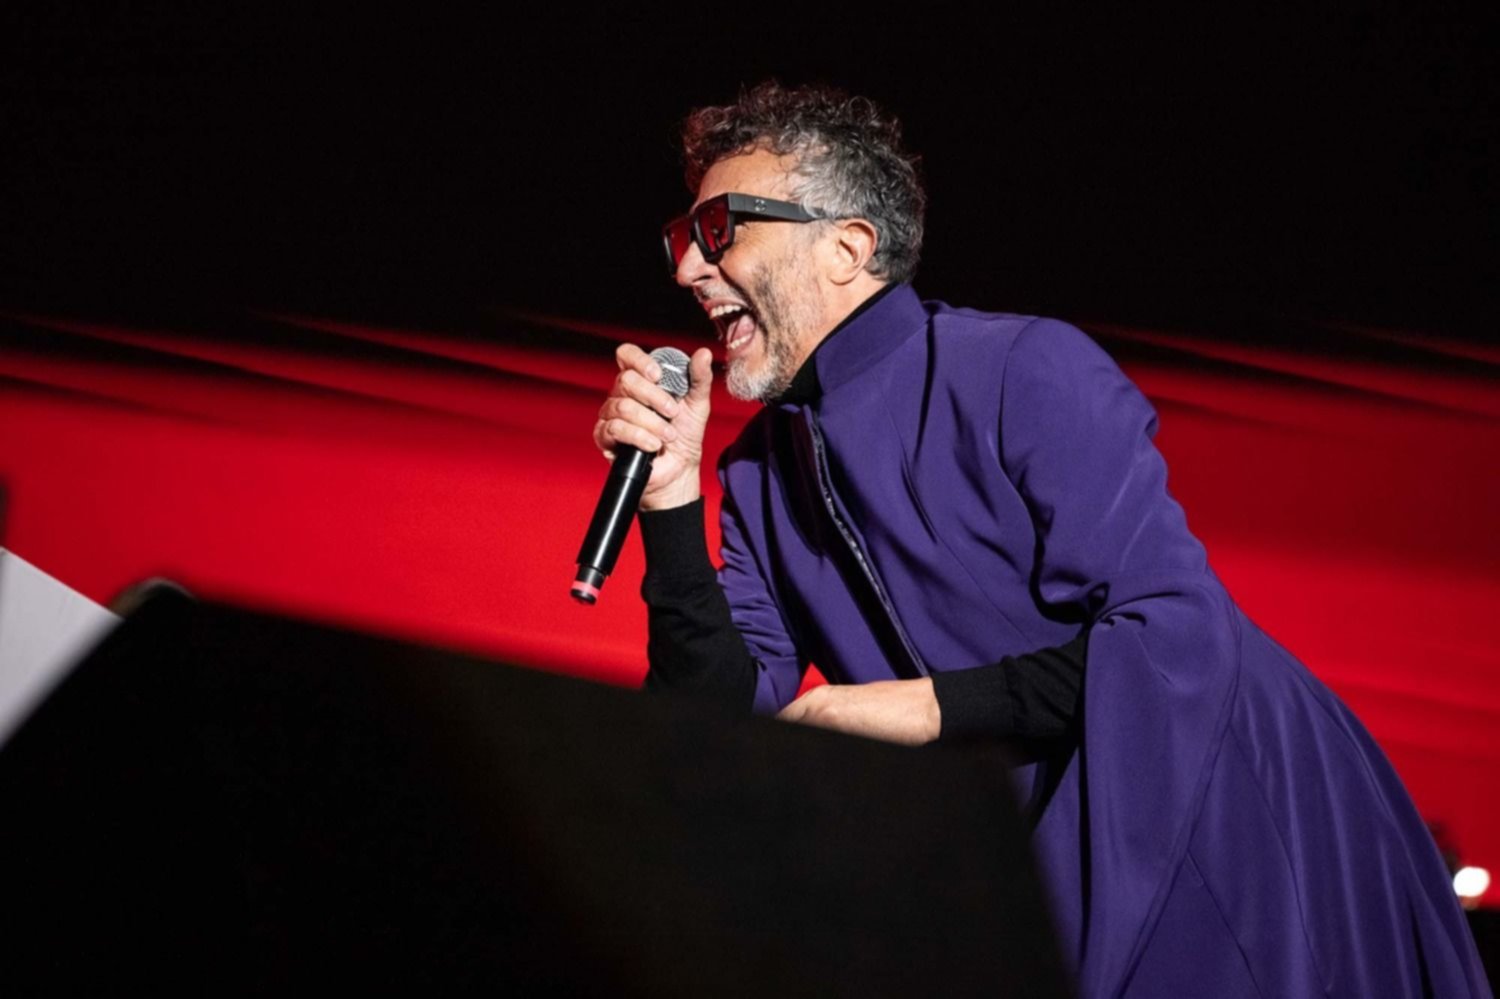 Fito Páez sumó una función en La Plata por su tour a 30 años de "El amor después del amor"